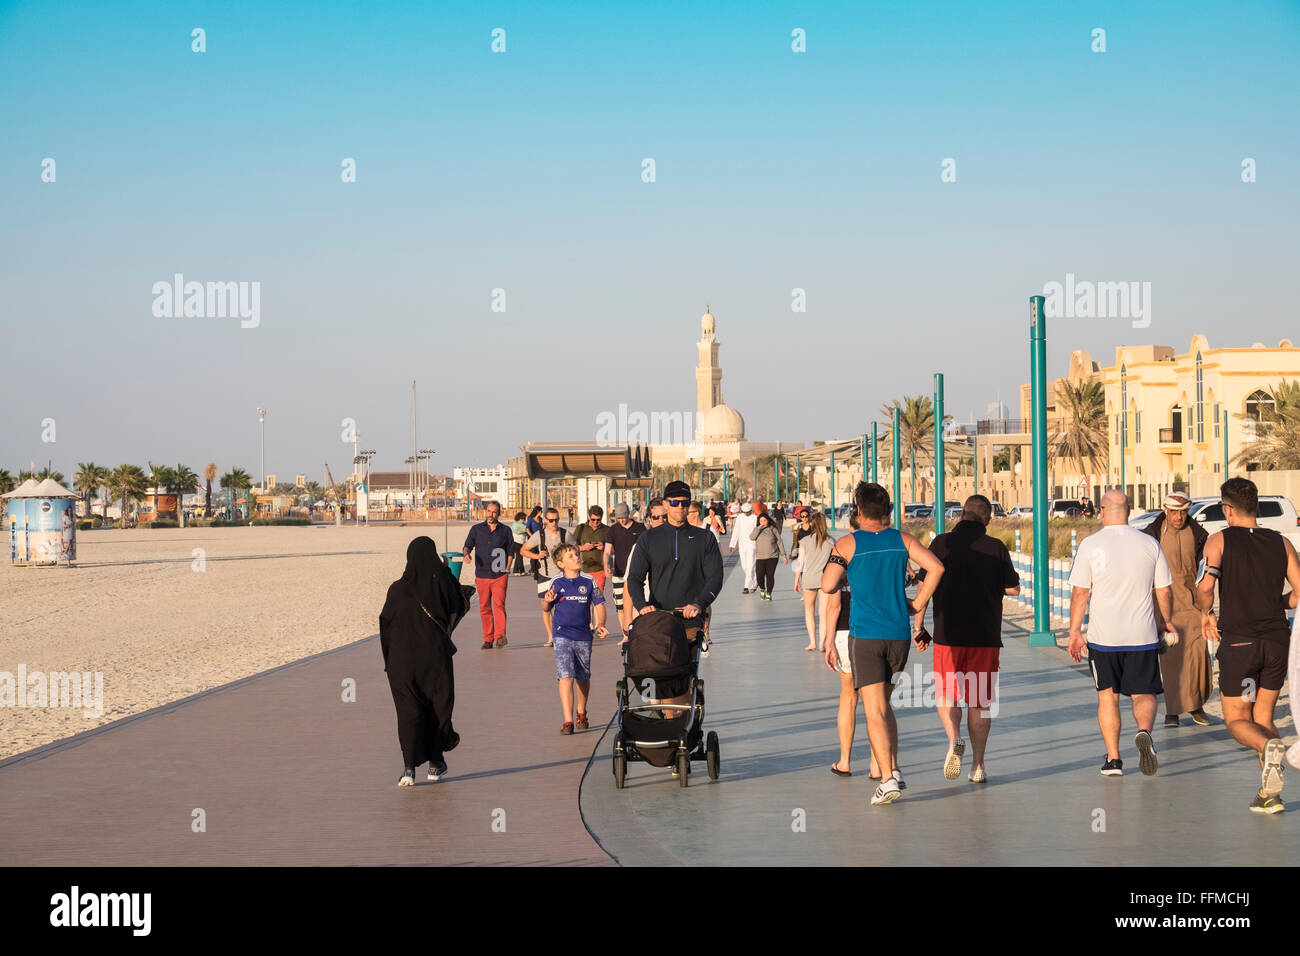 Molte persone utilizzano nuovo pubblico Boardwalk e pista da jogging accanto alla spiaggia in Dubai Emirati Arabi Uniti Foto Stock